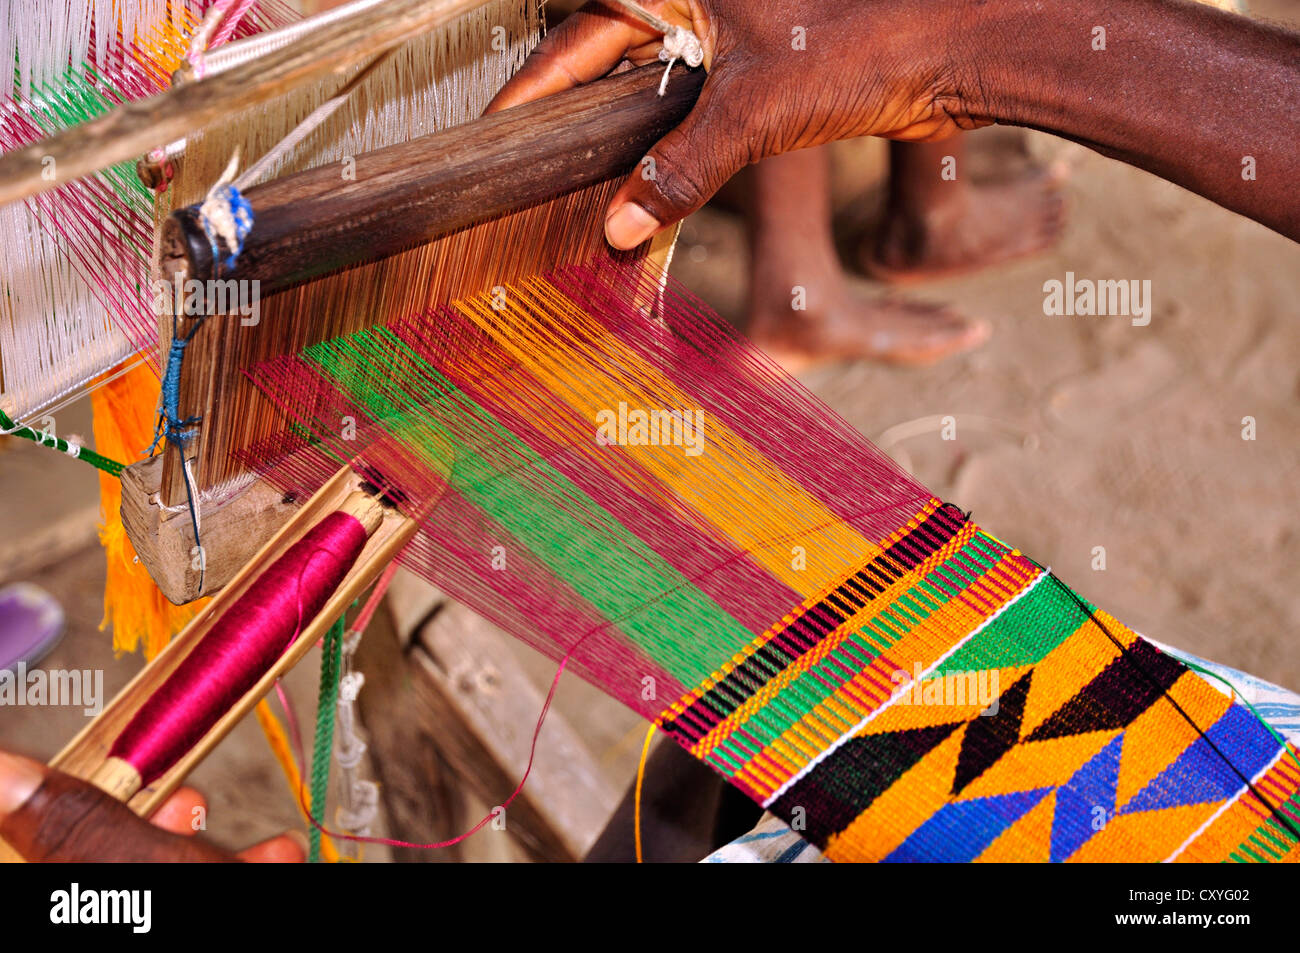 L'homme bande, Ghana kente tissage Banque D'Images